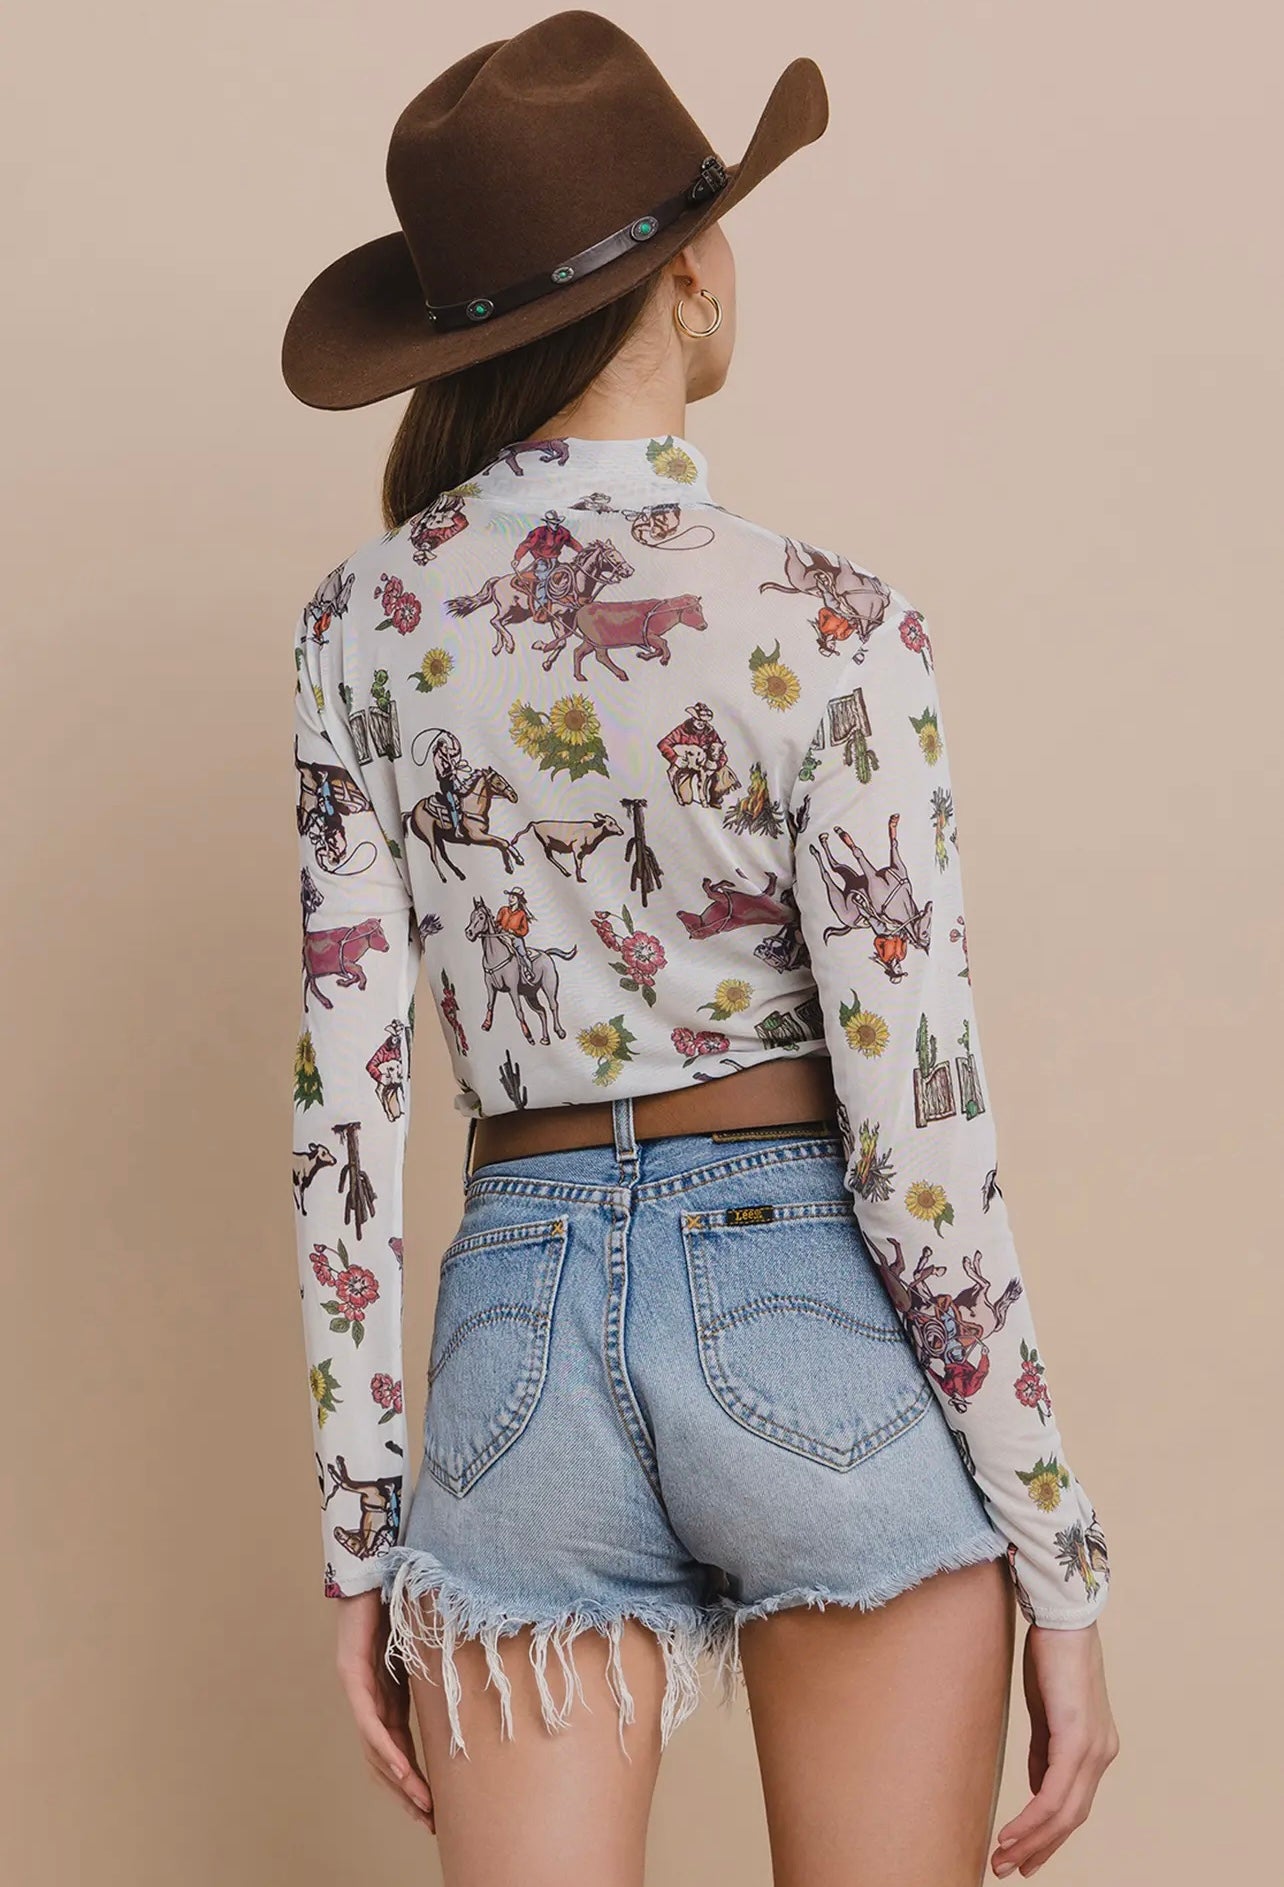 Bella-Western Floral Cowboy
Print Mesh Long Sleeves Top